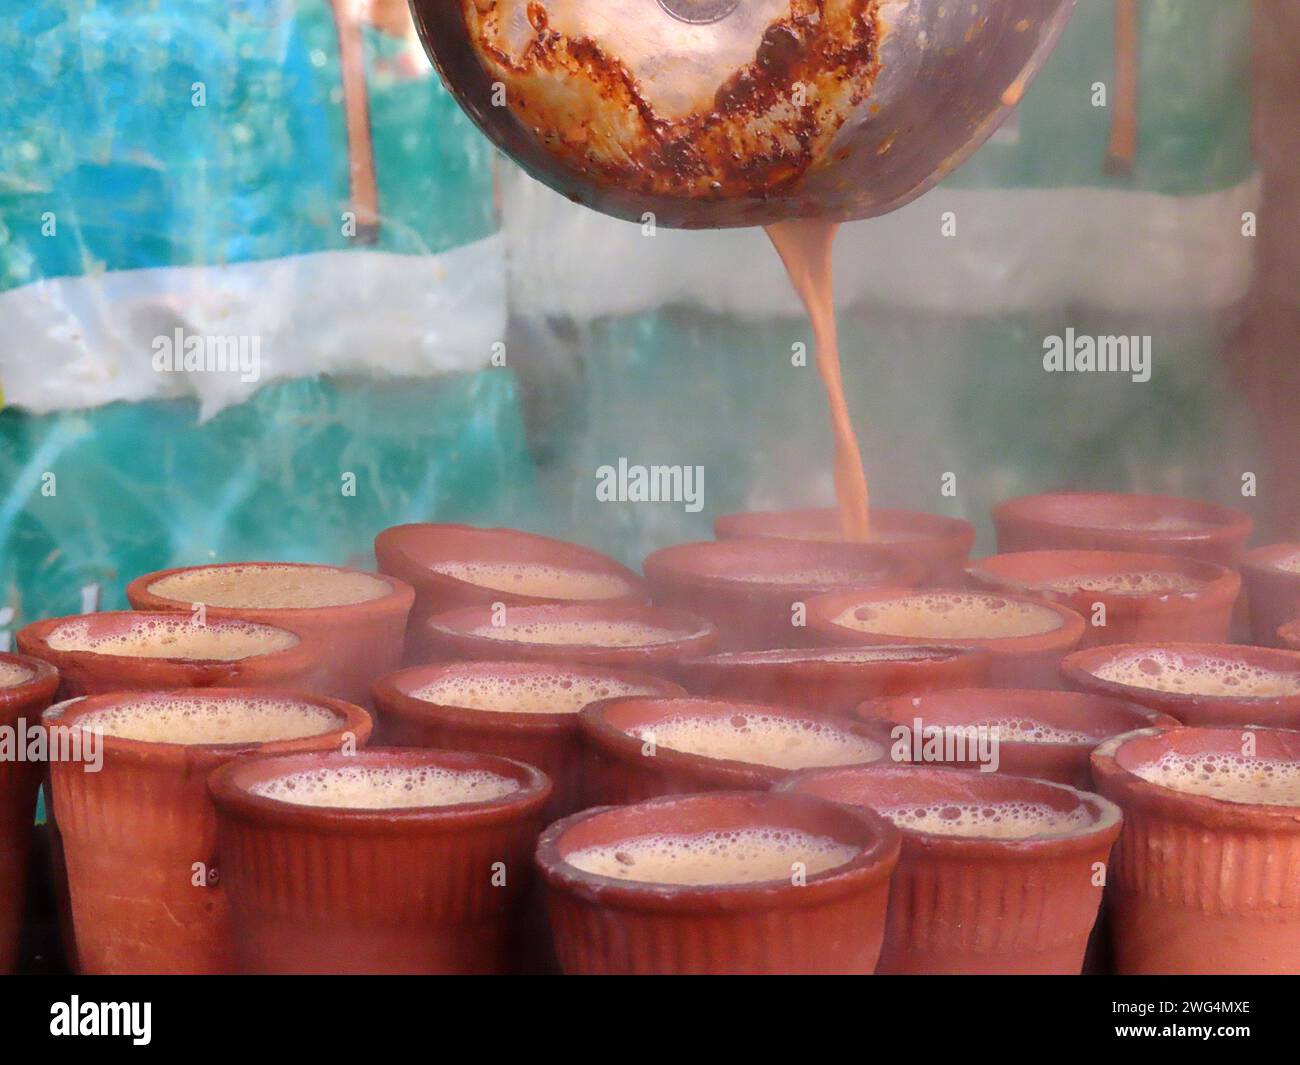 Authentique boisson de rue locale et traditionnelle en Inde et en Asie du Sud Chai masala thé épicé ou non épicé. Liquide versé à partir d'une marmite après avoir été Banque D'Images